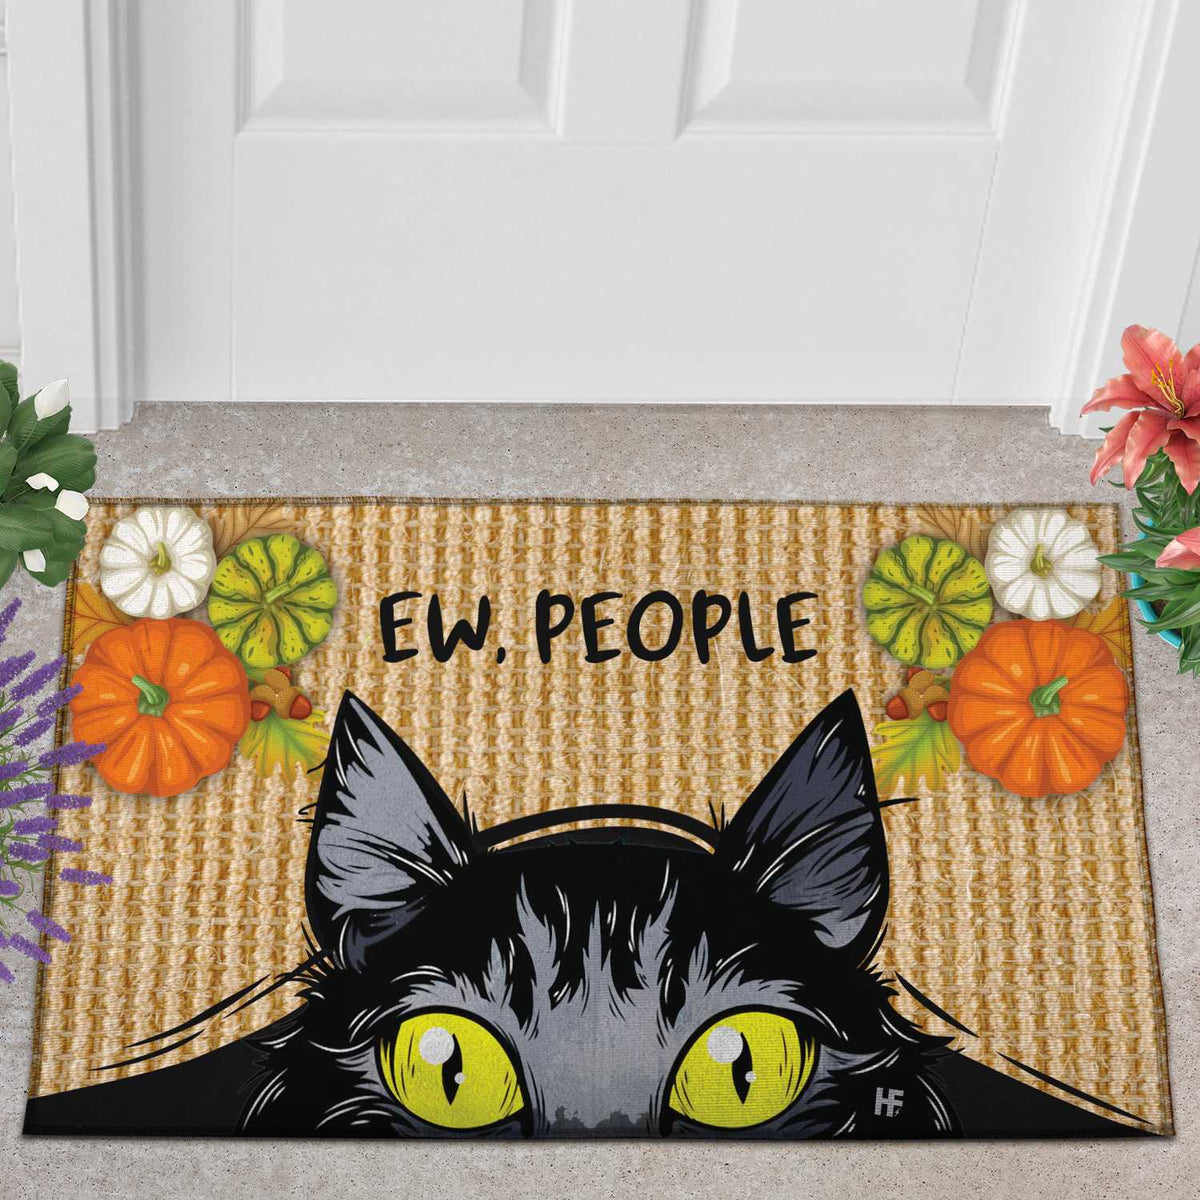 Ew People Cat Door Mats Home Decor